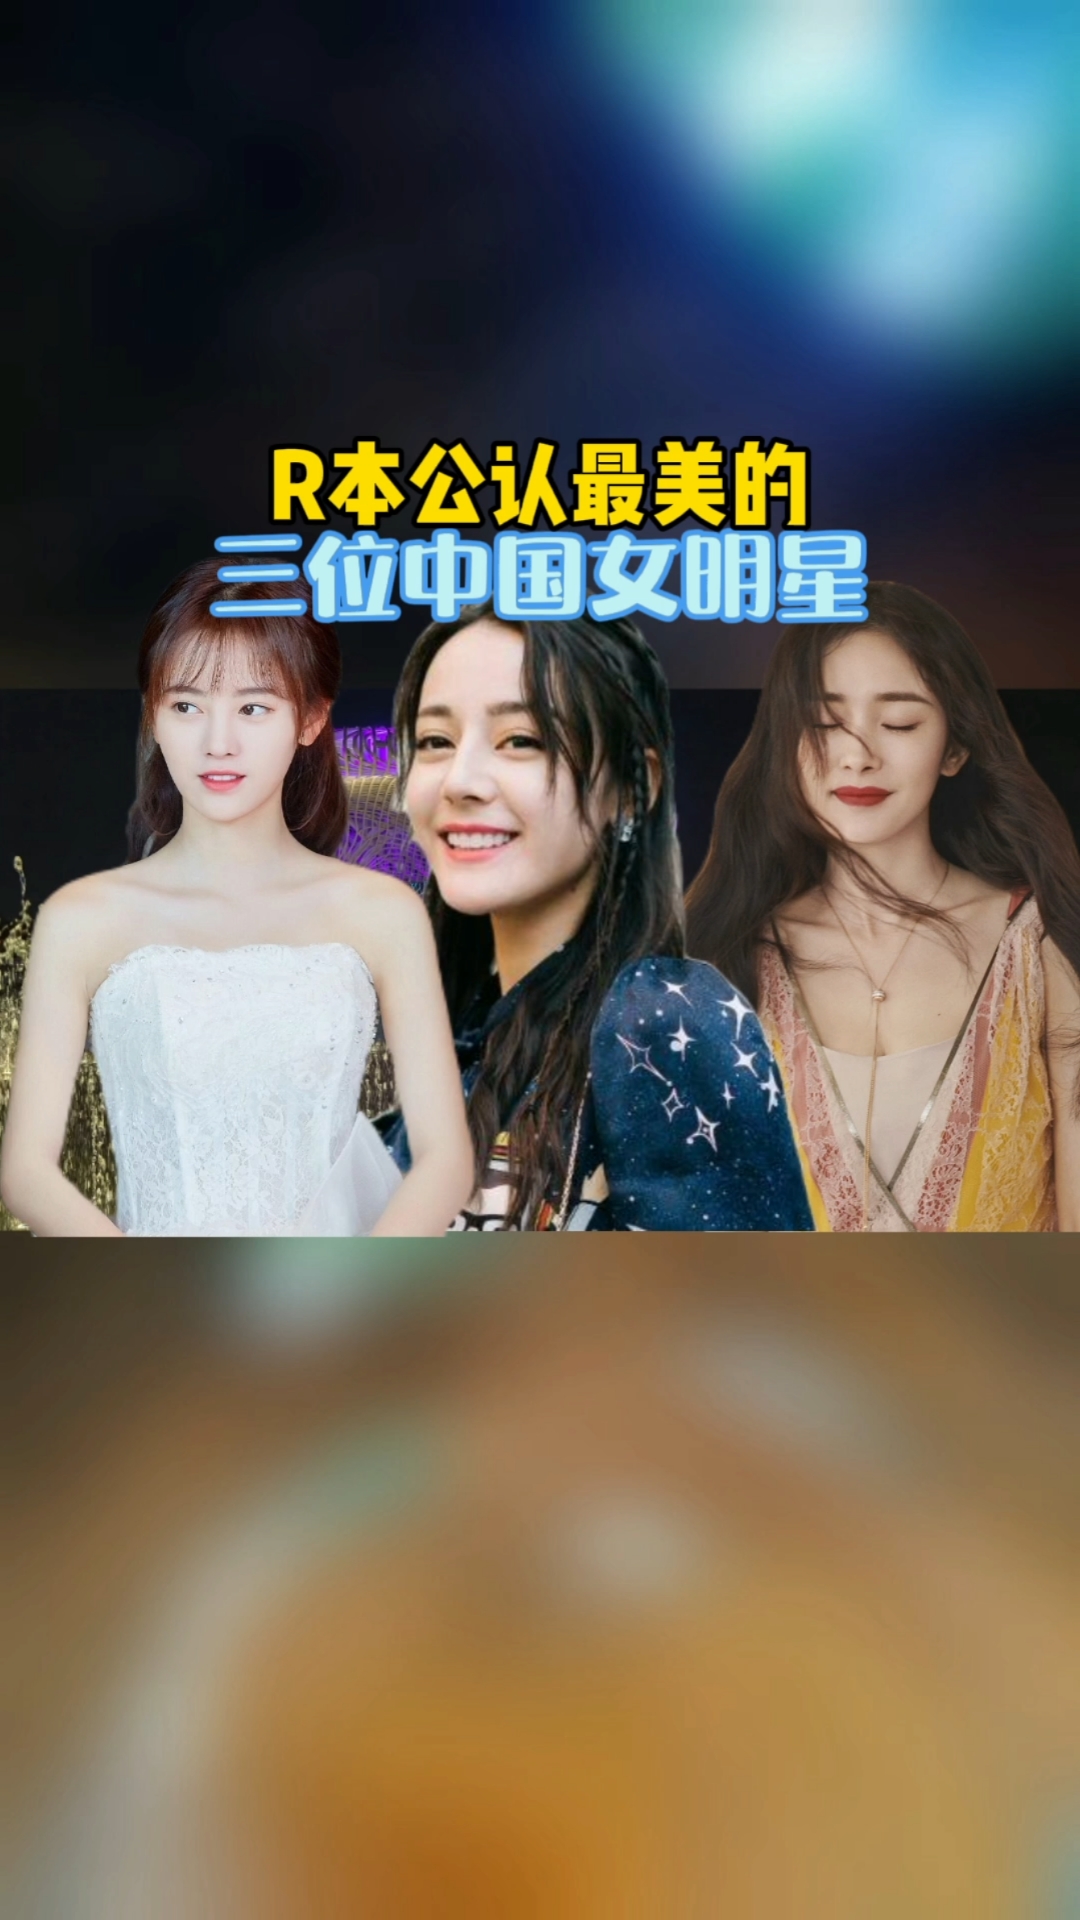 明星日本公认最美的三位中国女明星